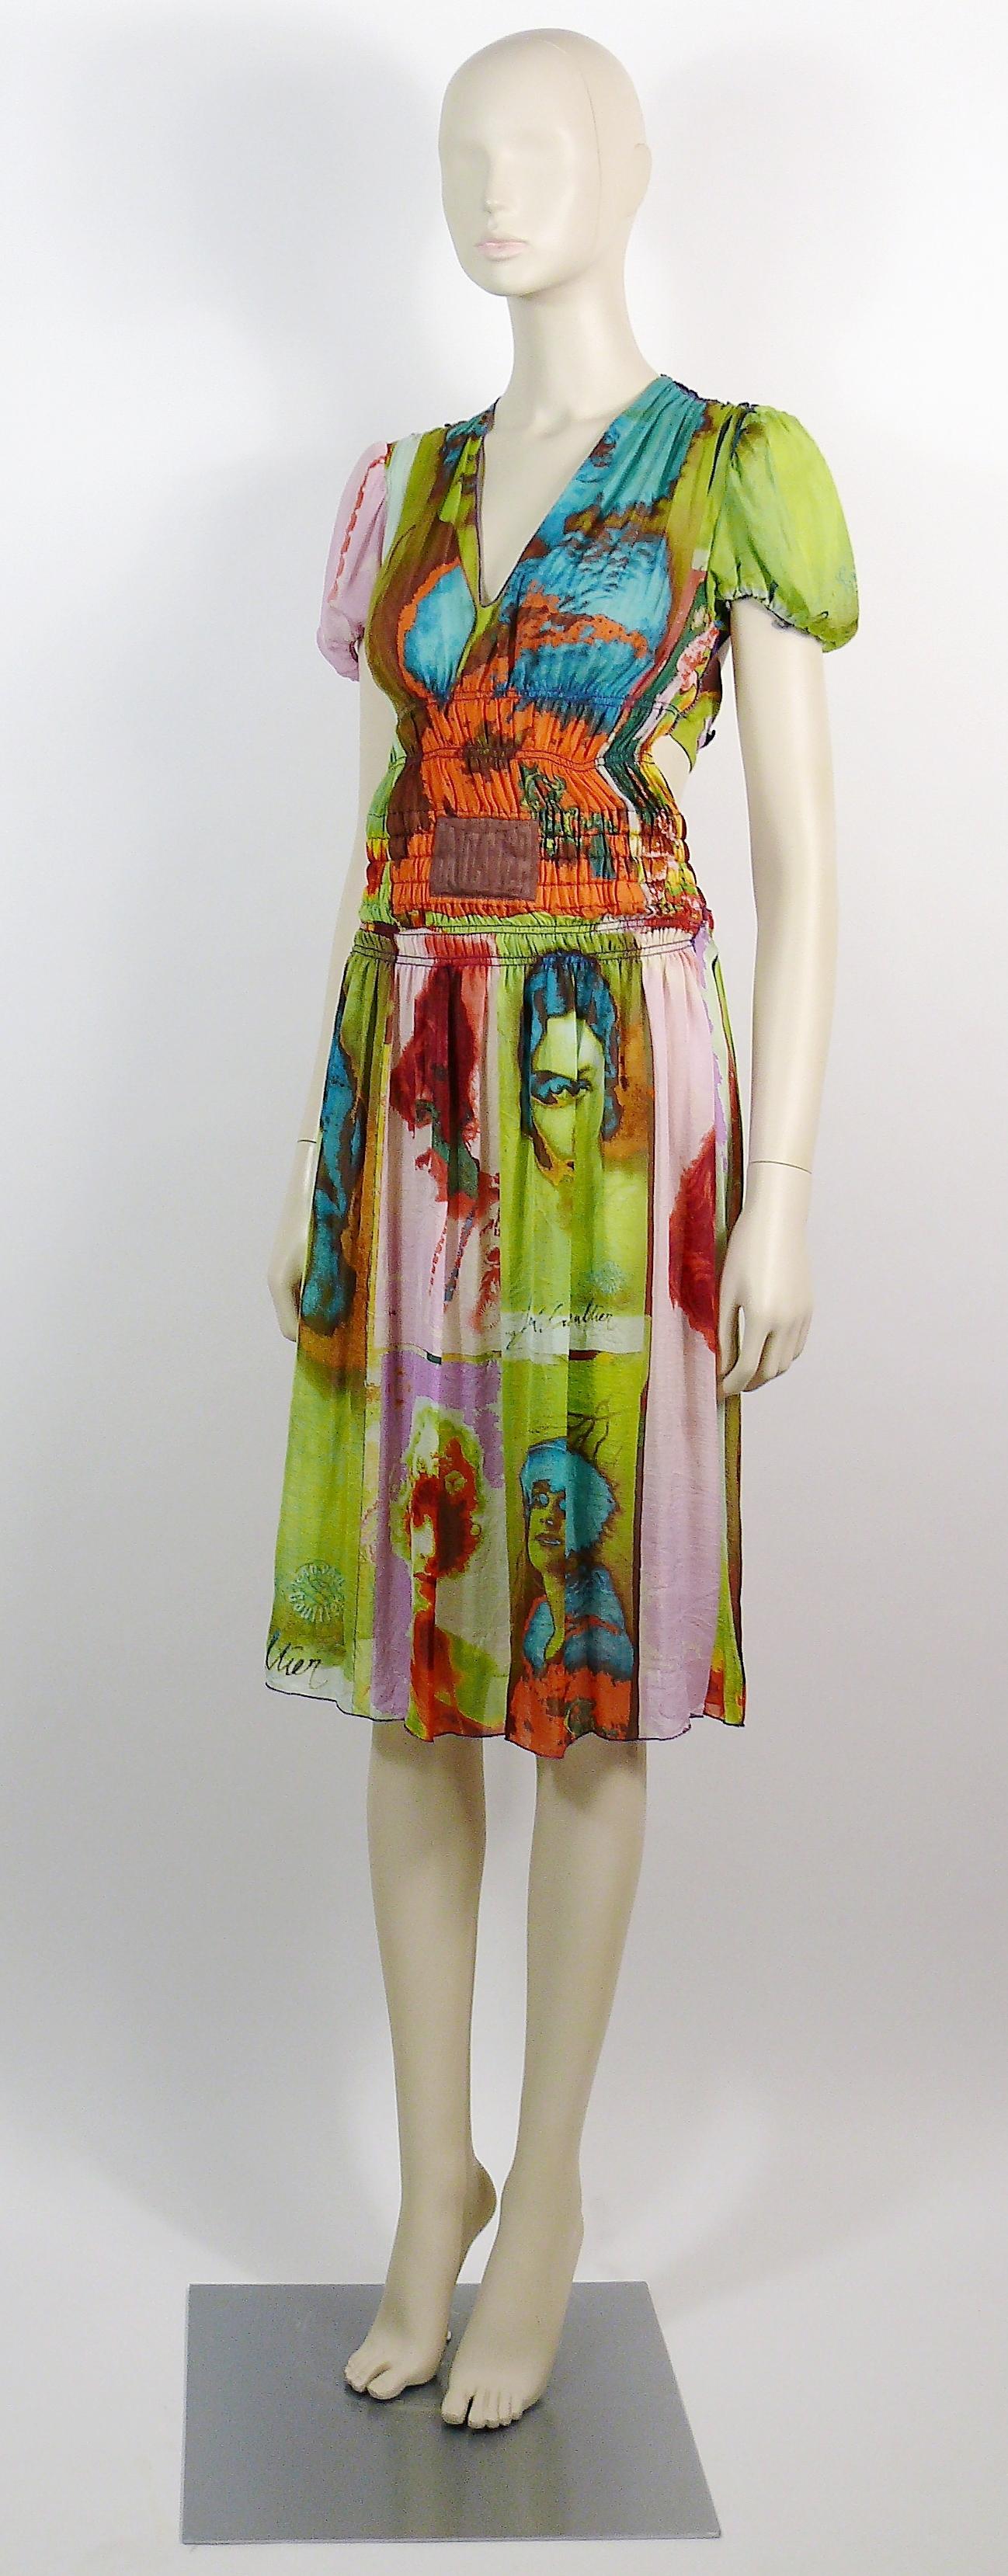 Brown Jean Paul Gaultier Vintage Portrait Photo Print Dress